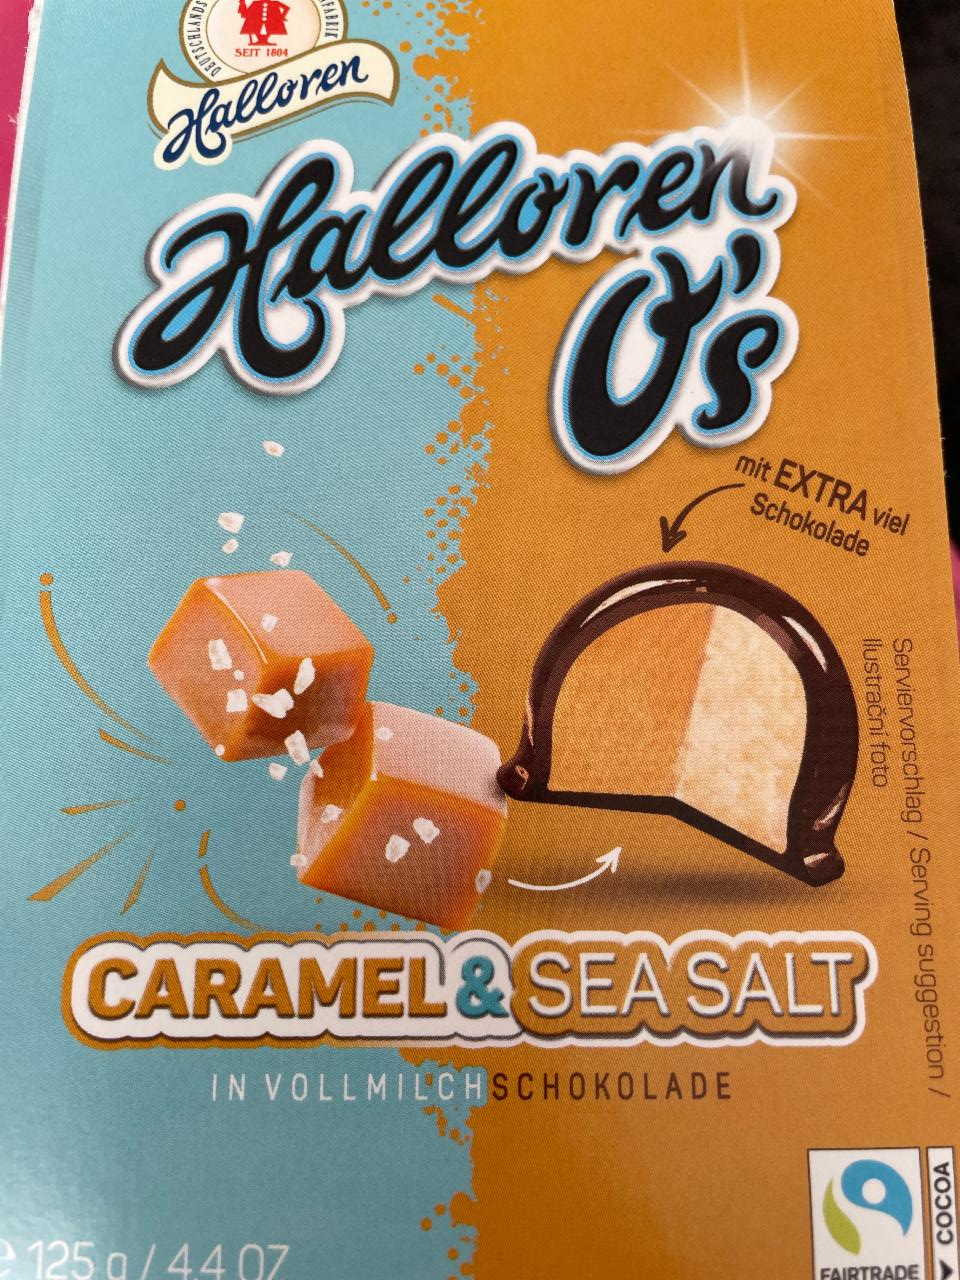 Fotografie - Halloren o's caramel sea salt Halloren